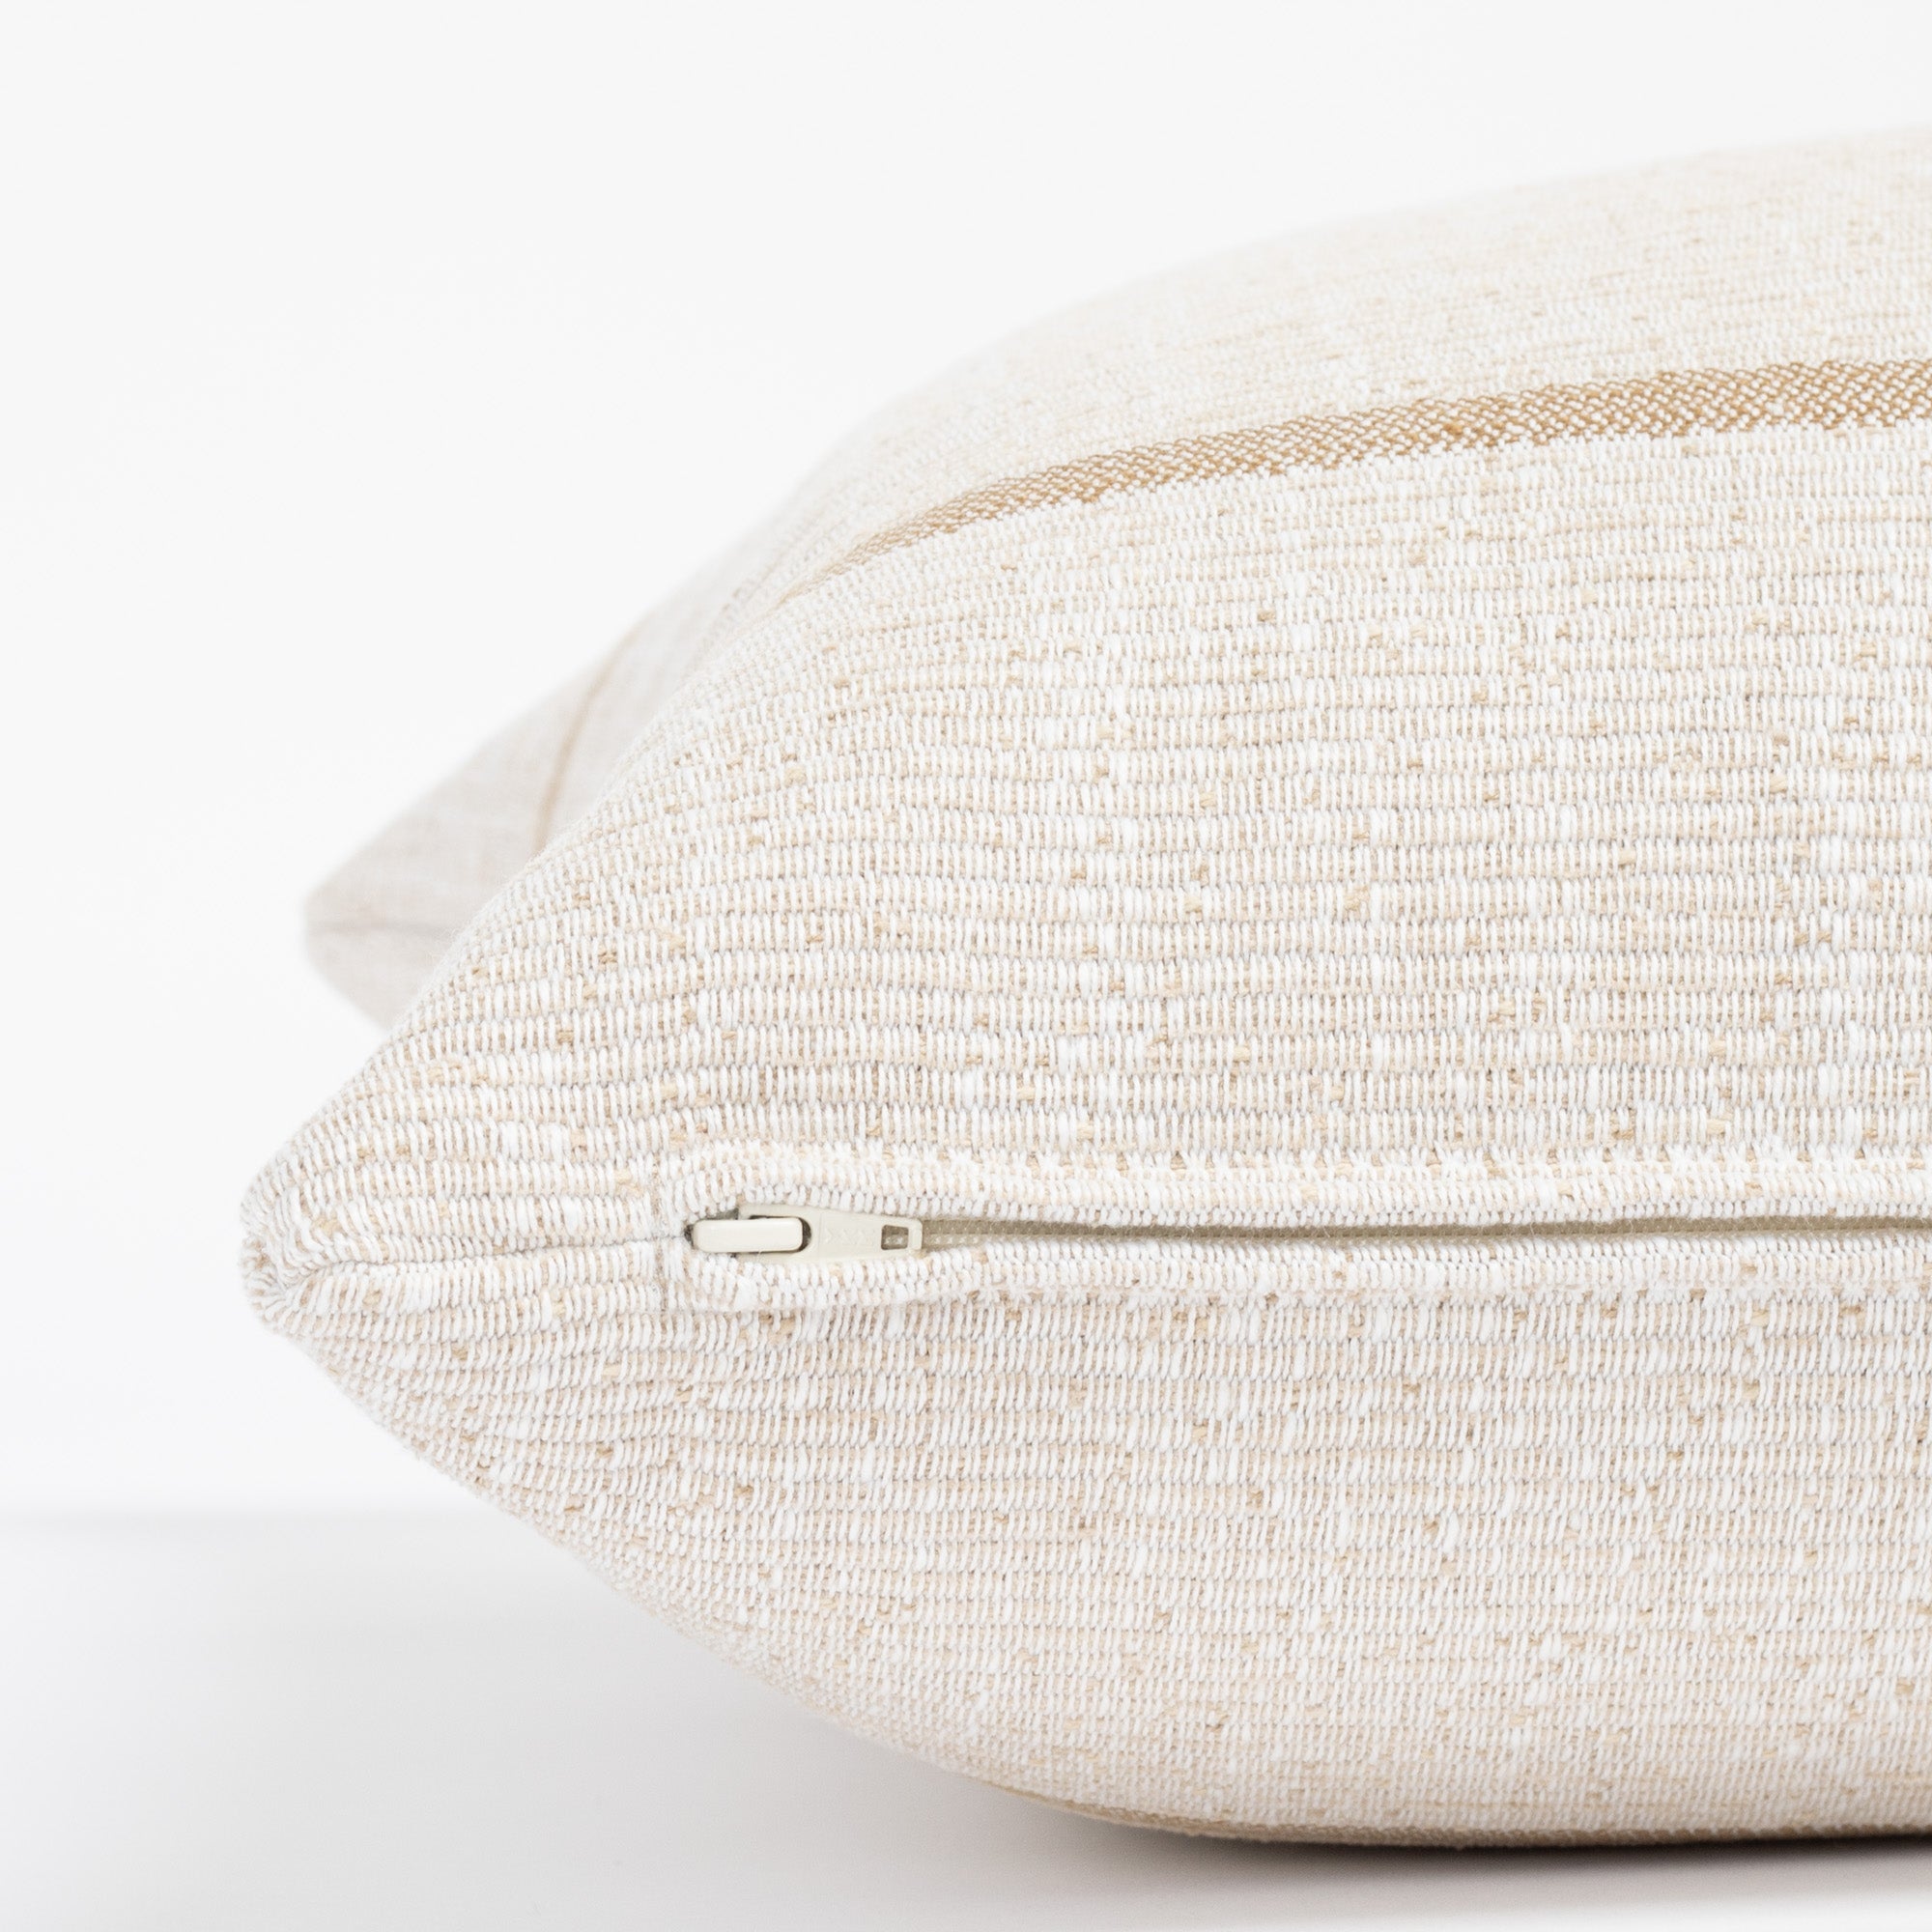  a caramel and cream stripe throw pillow : zipper detail